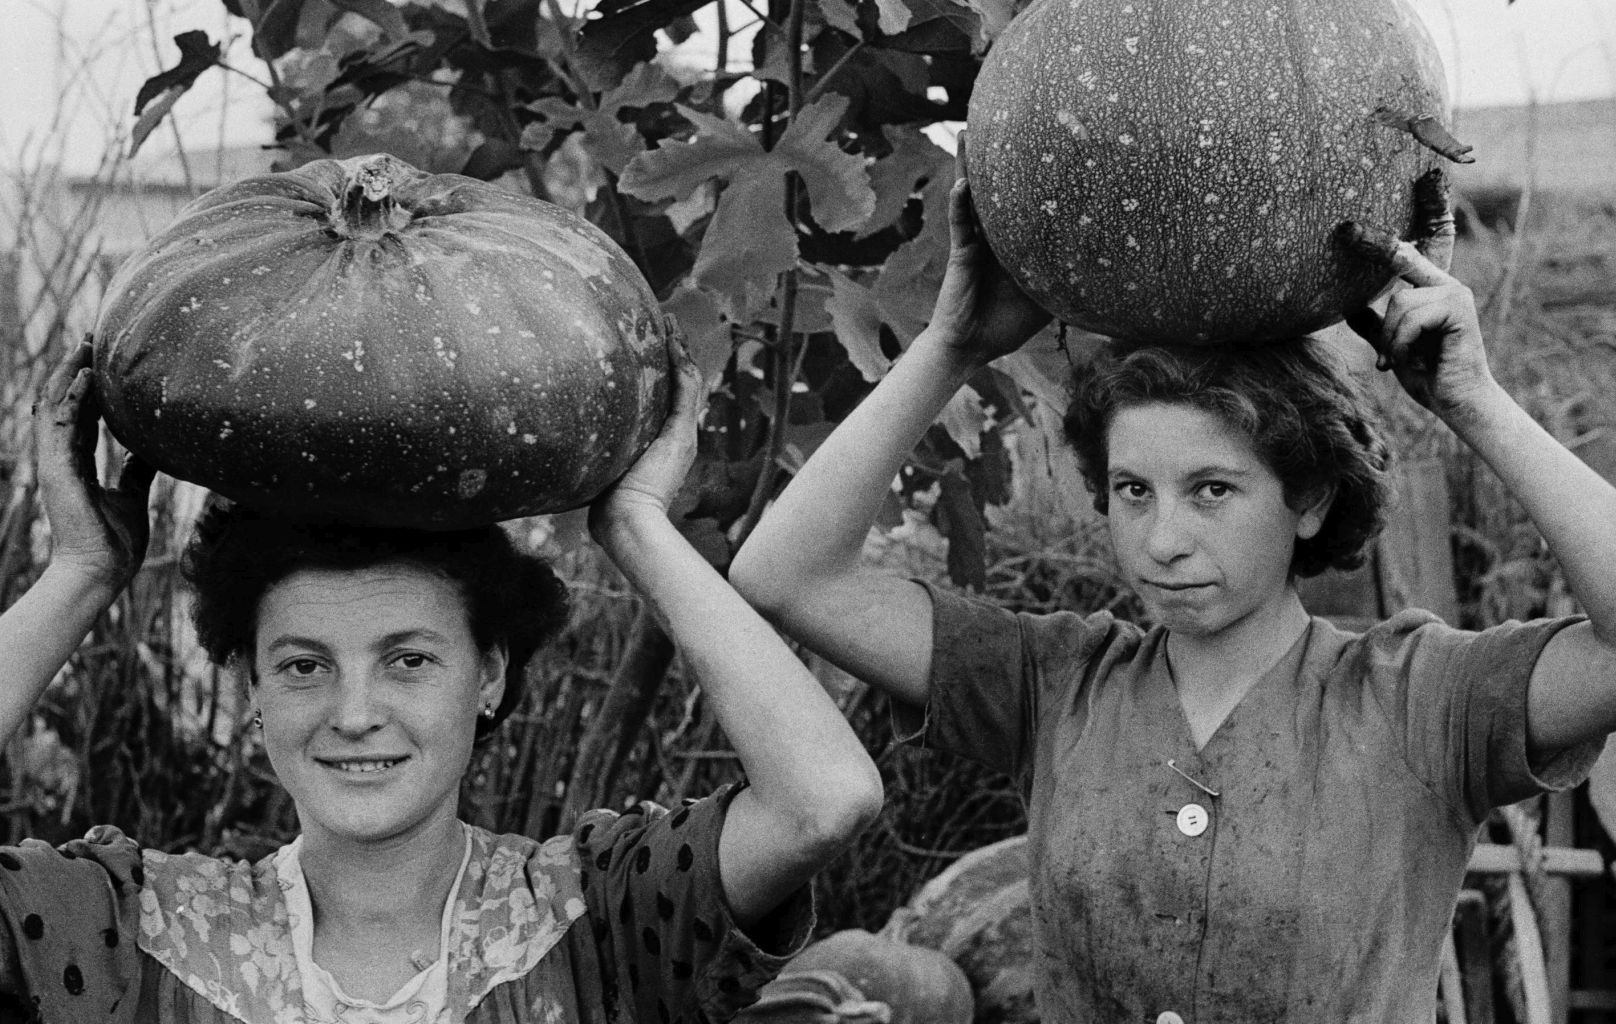 Ando Gilardi, Giovani donne portano zucche sulla testa.
Qualiano (Napoli), ottobre 1954 © Fototeca Gilardi